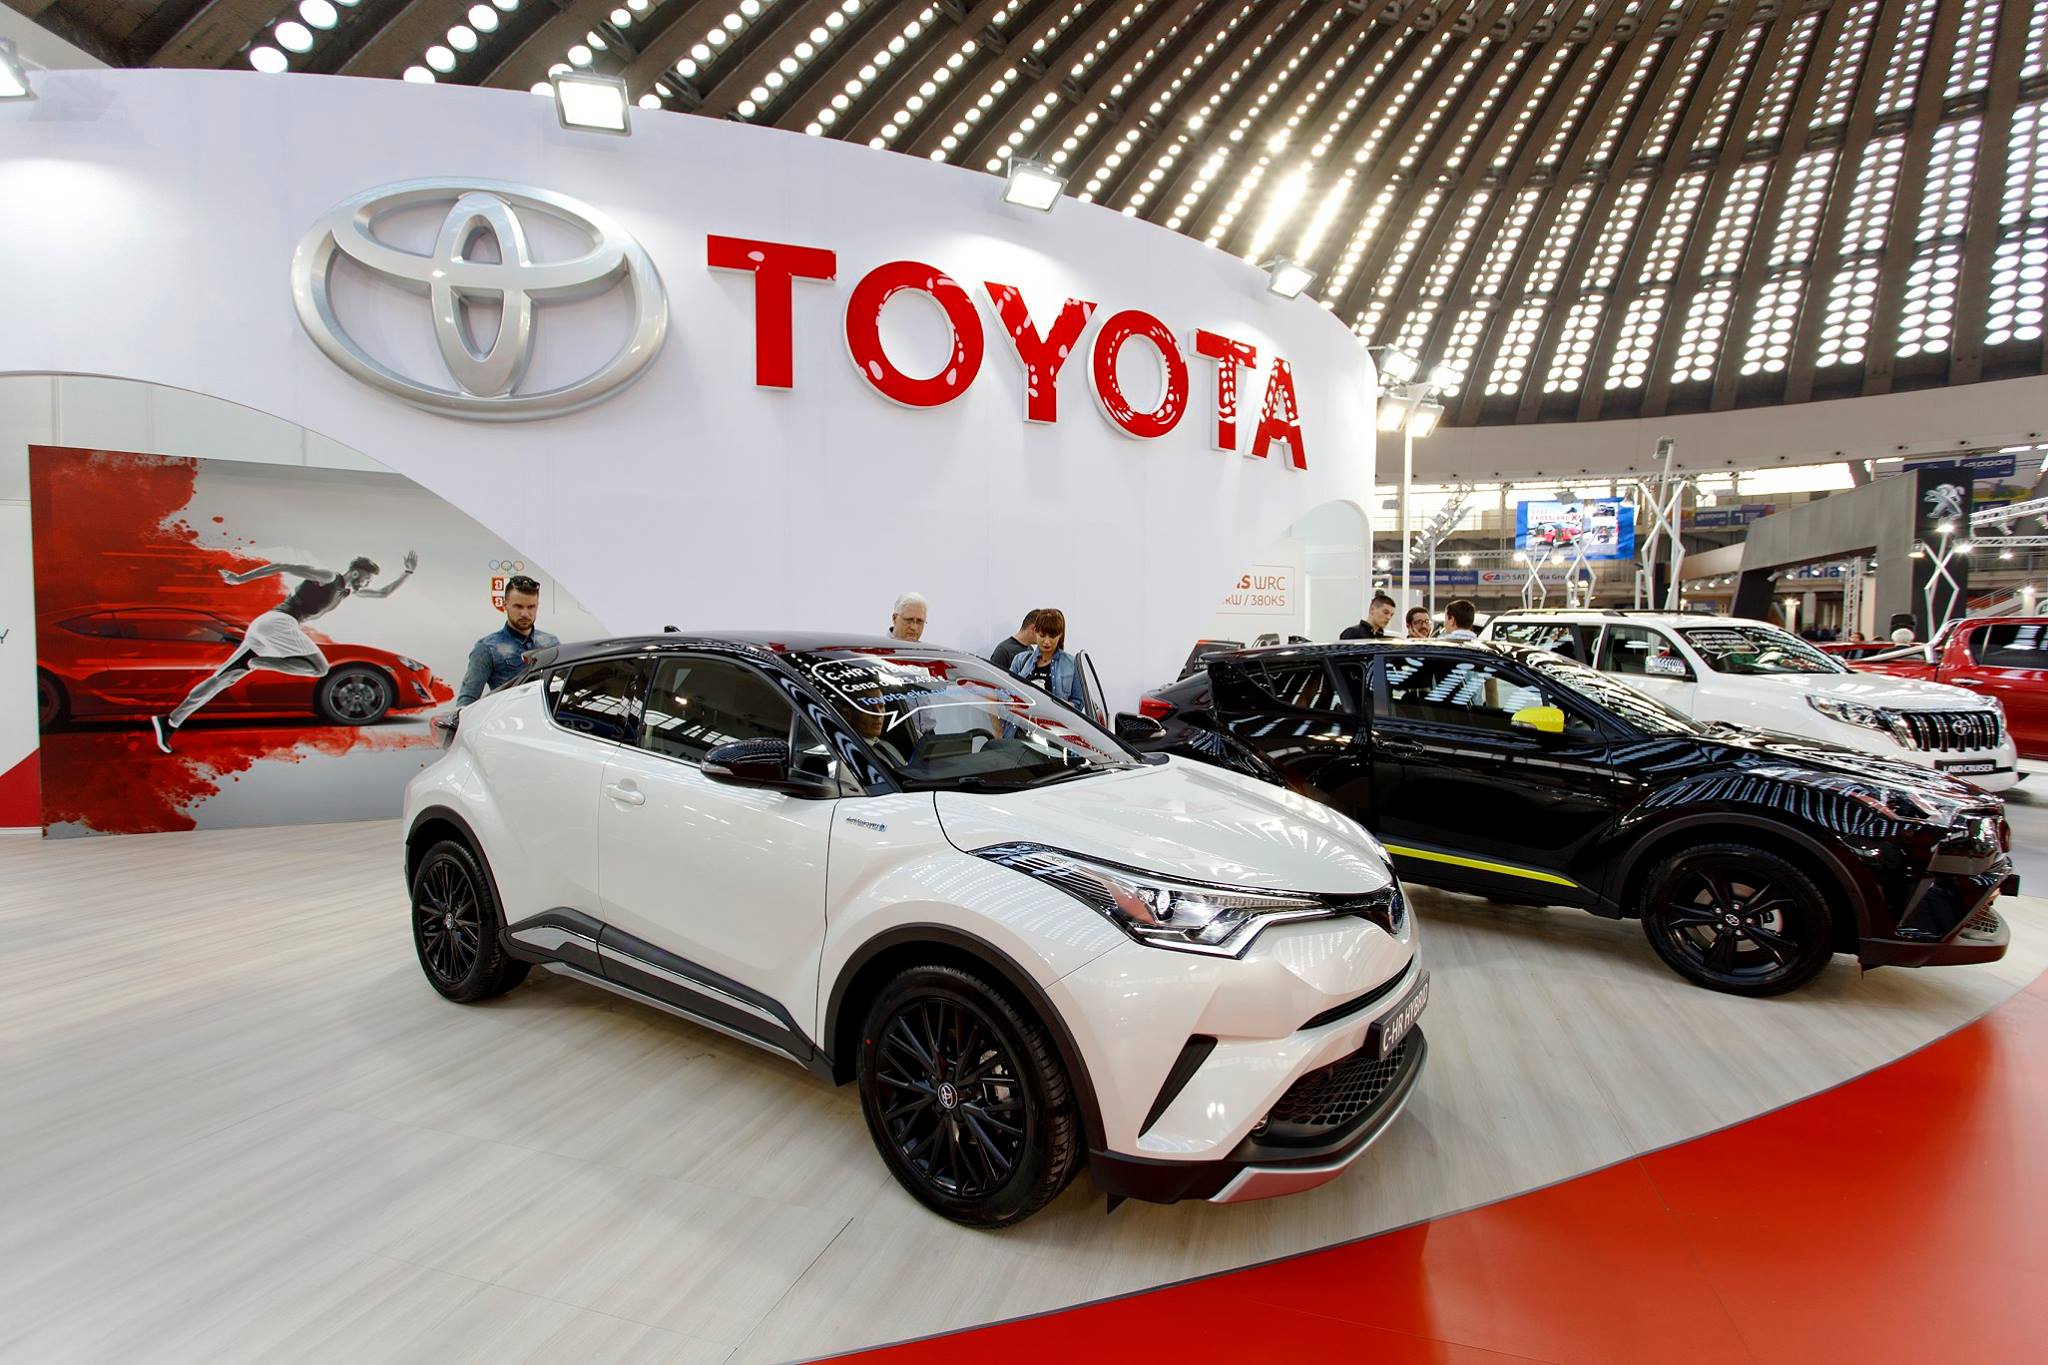 Specijalno priznanje za Toyota štand! Odlična prodaja na sajmu!